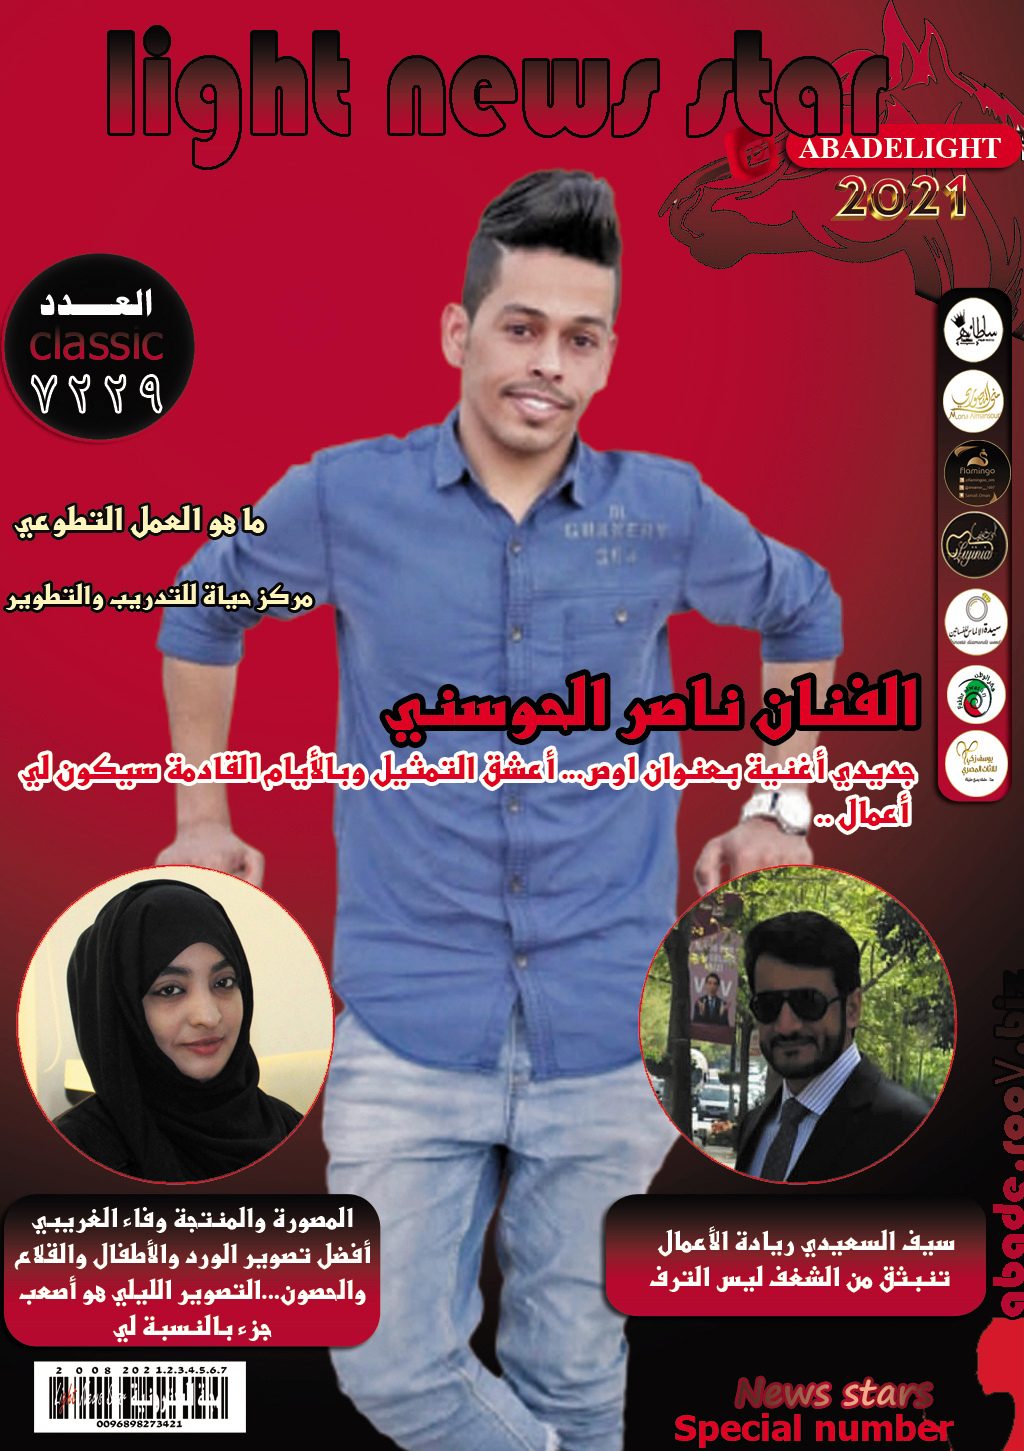 مجلة لايت نيوز ستار 7229 نجم الغلاف الفنان ناصر الحوسني Aoo058